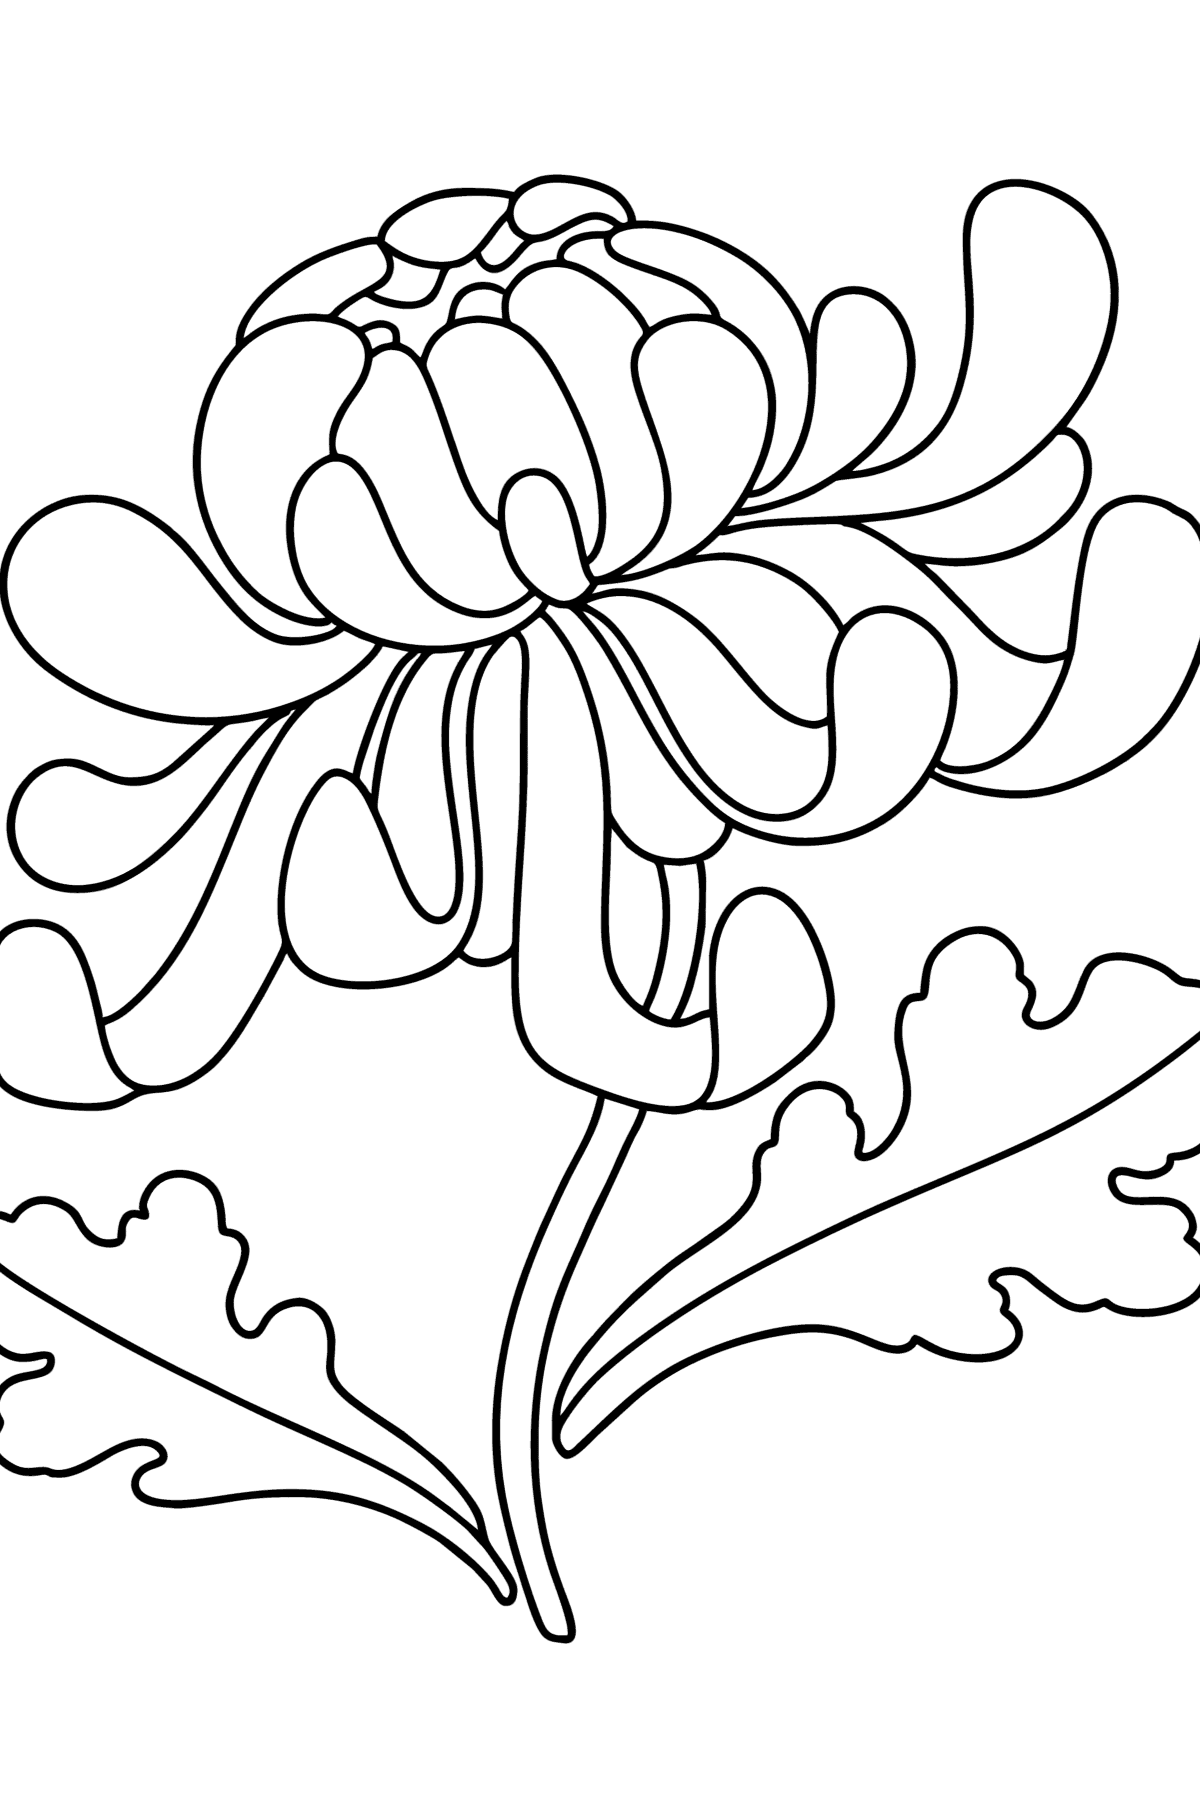 Ausmalbild Chrysanthemen - Malvorlagen für Kinder